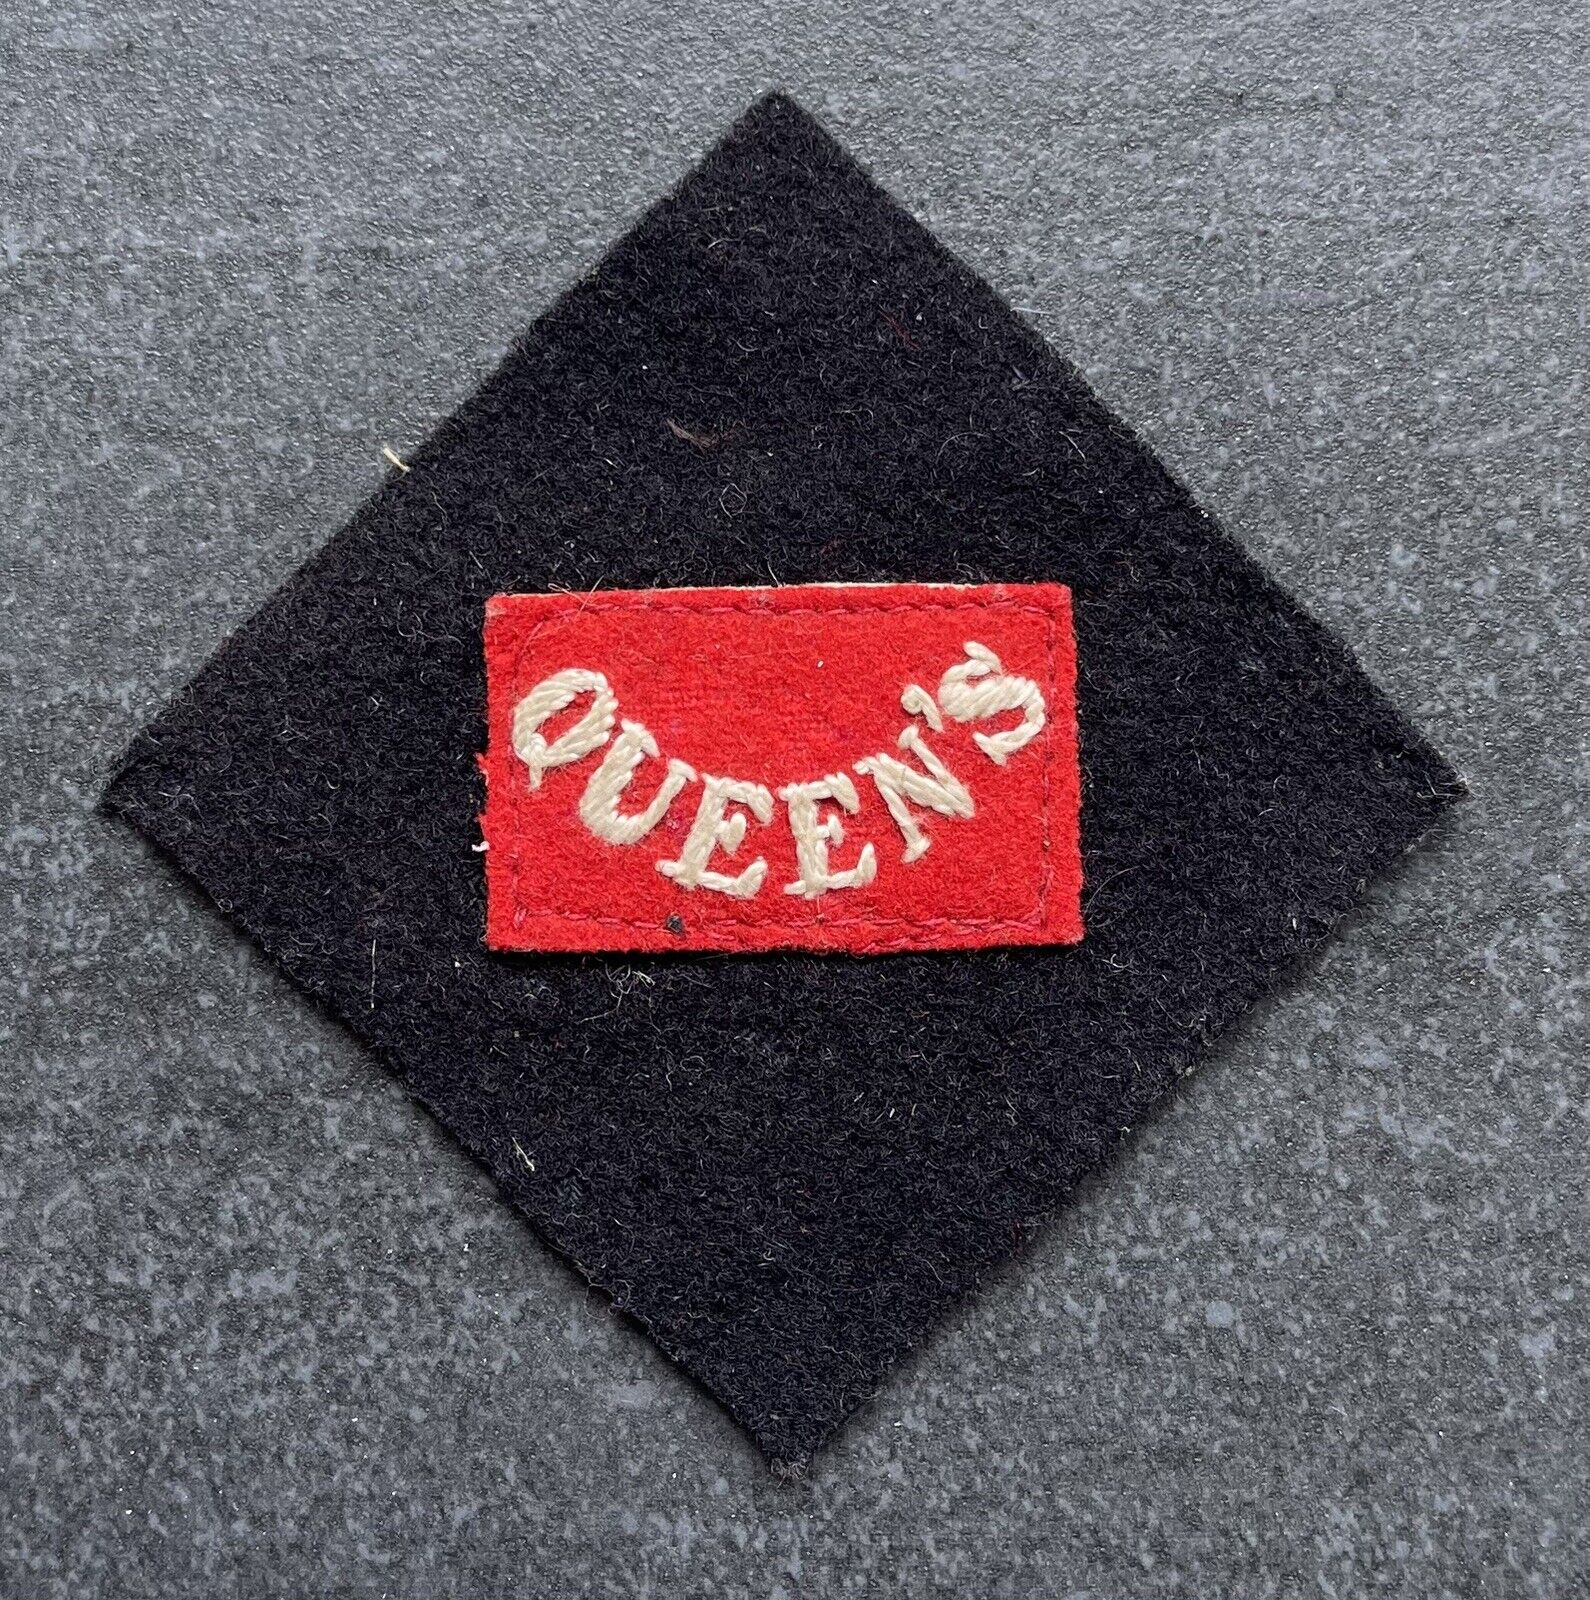 Queen’s Royal Regiment West Surrey Pagri Flash Cloth Badge Original